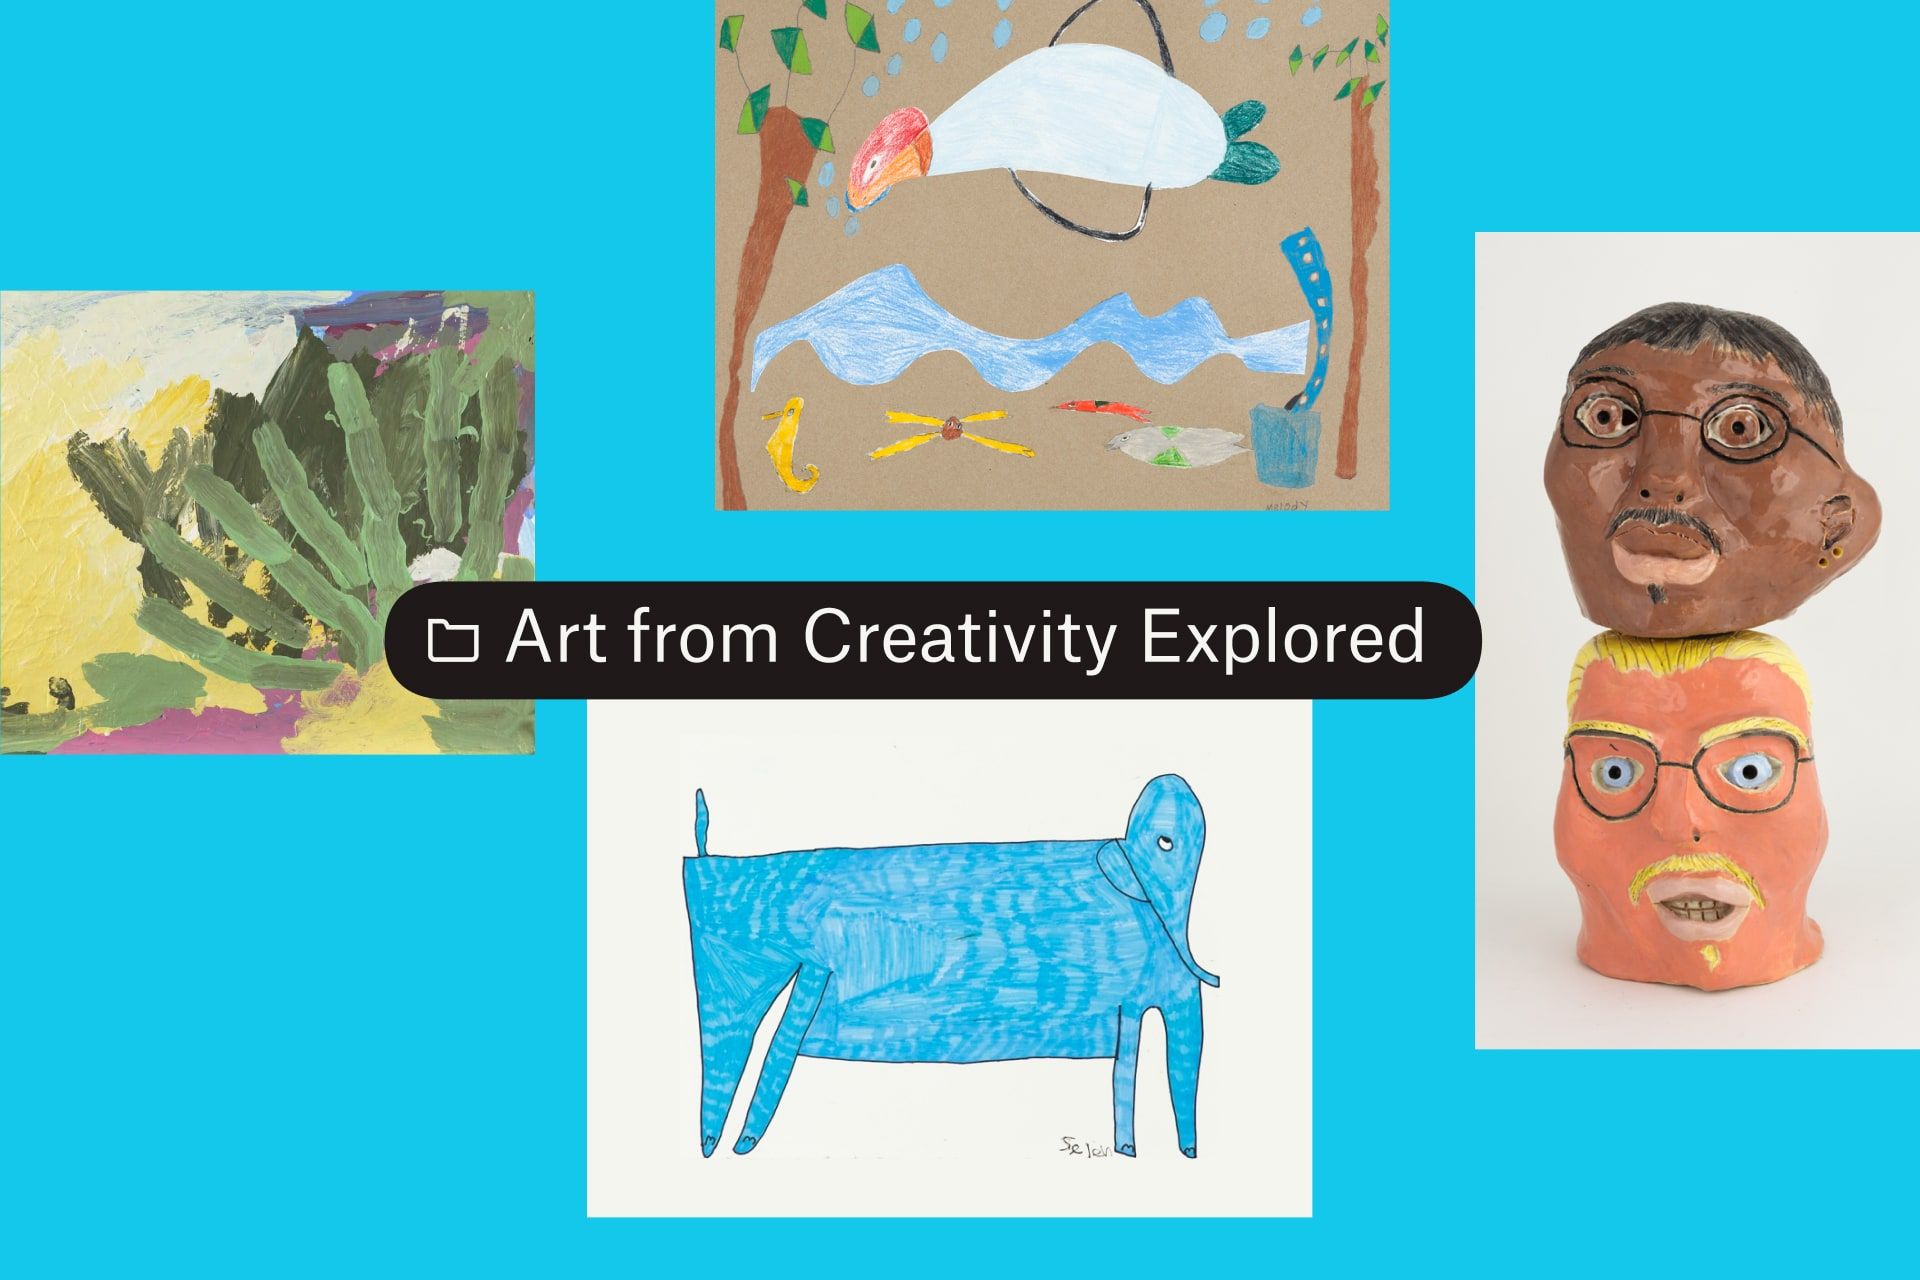 Folder berjudul Seni dari Creativity Explored dengan empat gambar seni